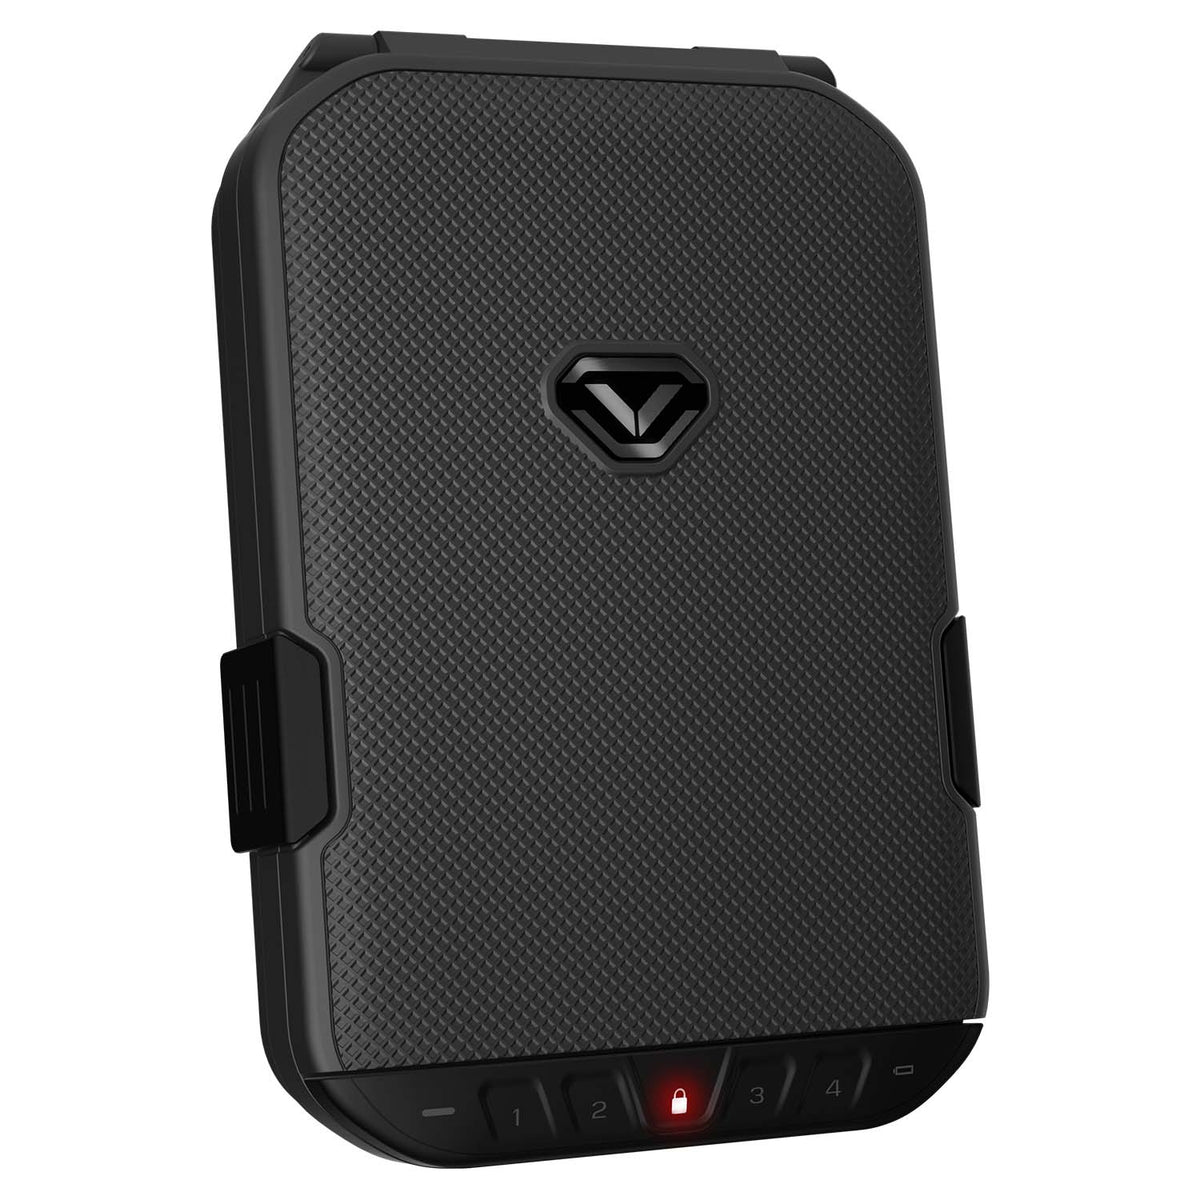 Vaultek - LifePod Secure Weather Resistant Keypad Gun Safe with Built-in Lock System